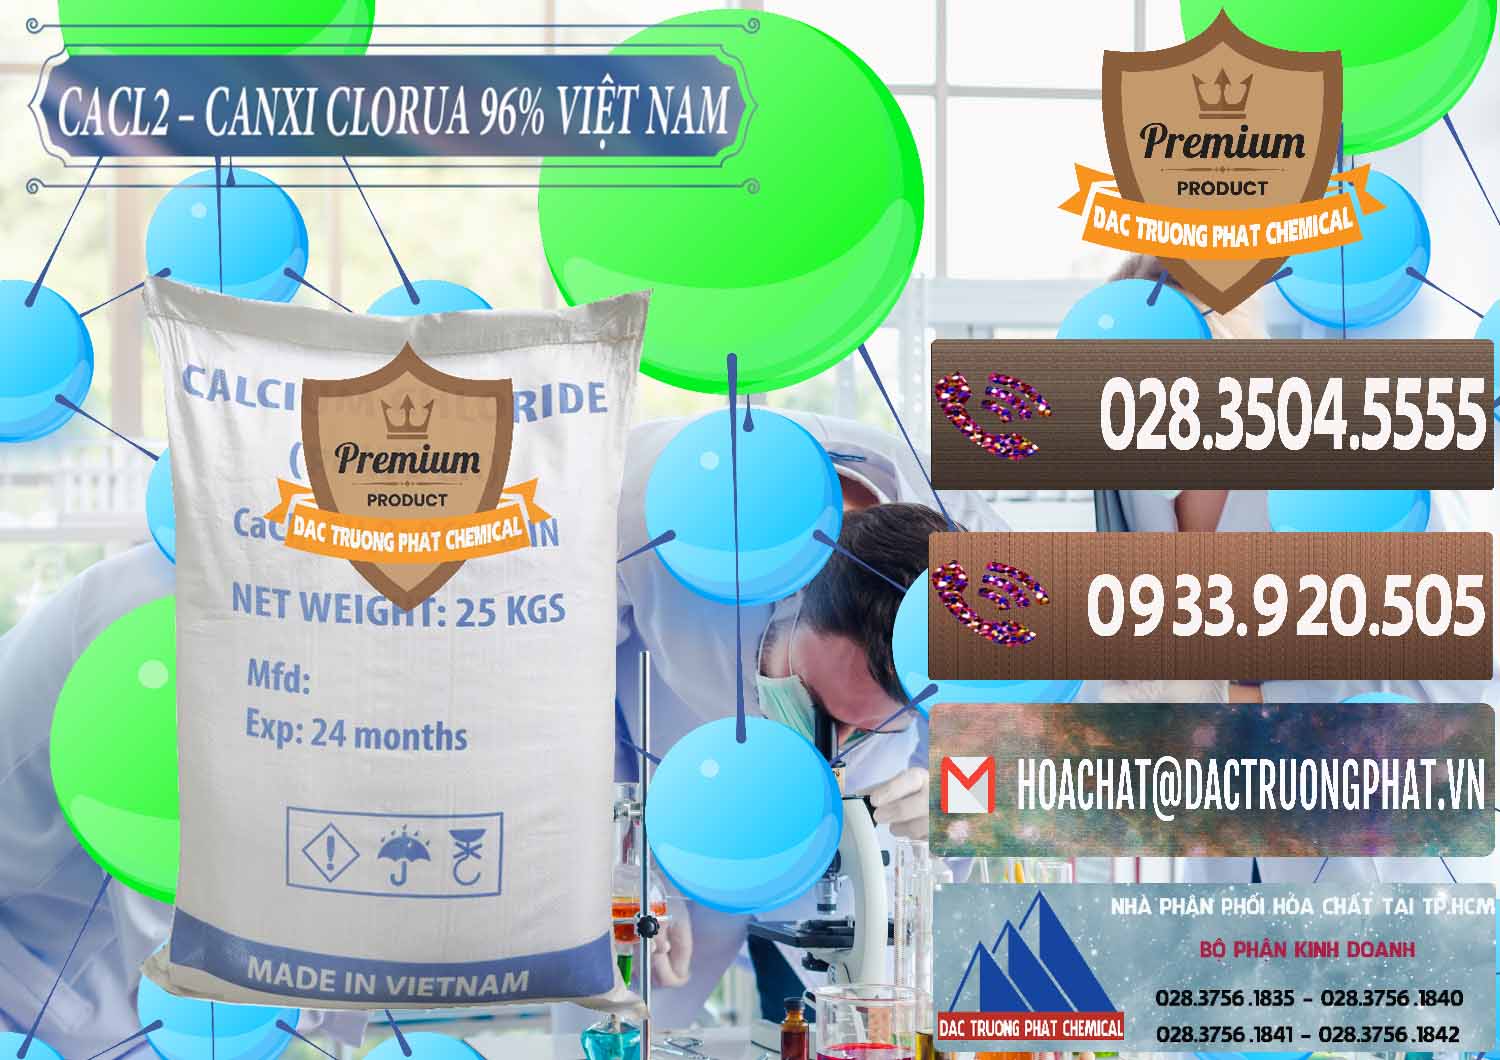 Cty chuyên cung ứng và bán CaCl2 – Canxi Clorua 96% Việt Nam - 0236 - Nhà phân phối ( cung cấp ) hóa chất tại TP.HCM - hoachatviet.net